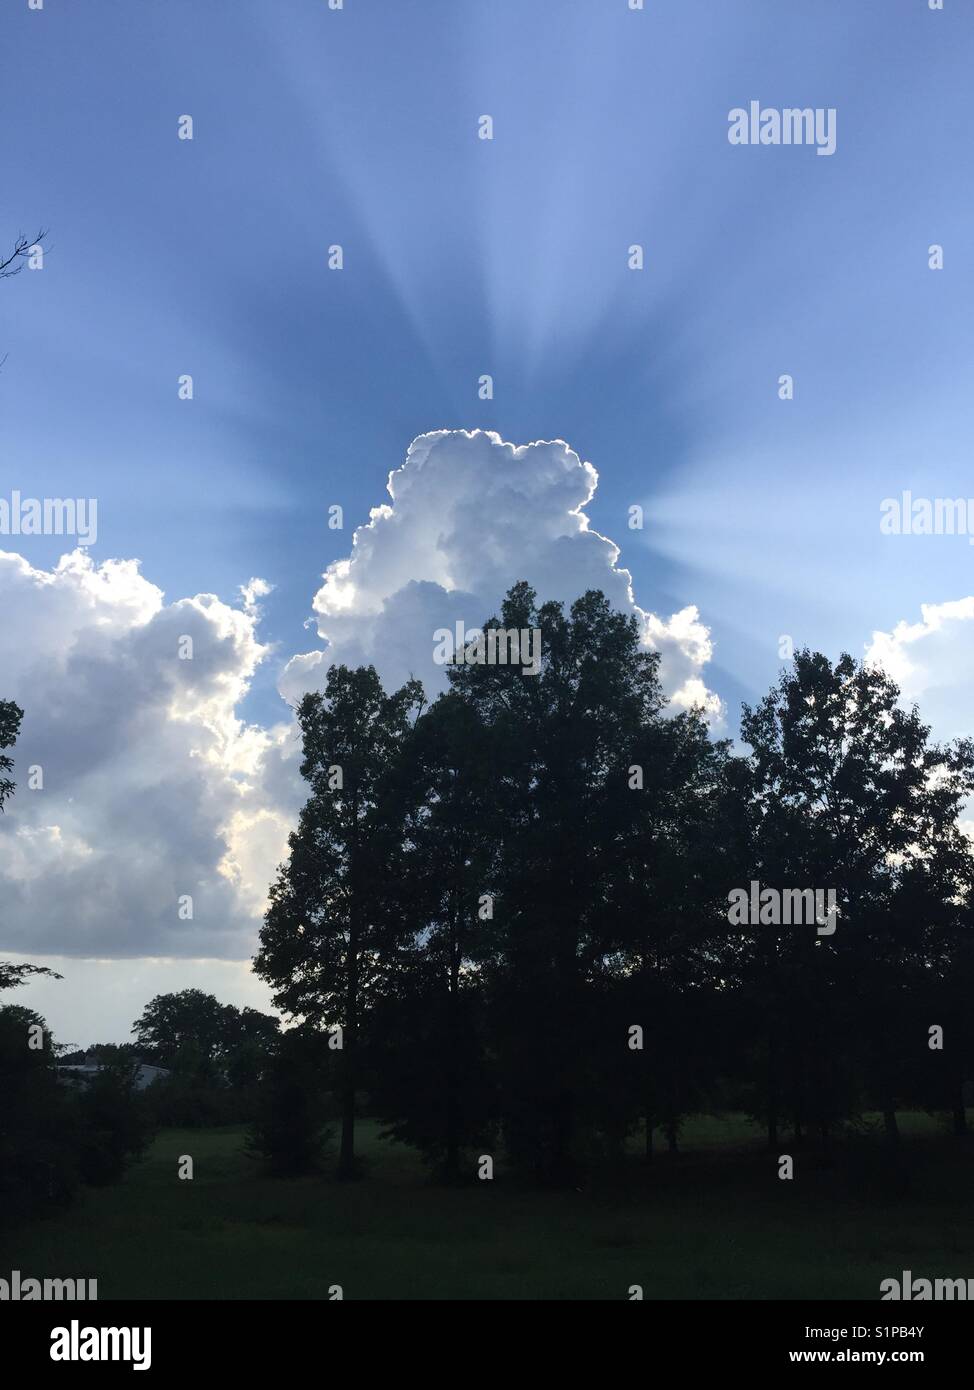 Rayos de sol alrededor de una nube Foto de stock